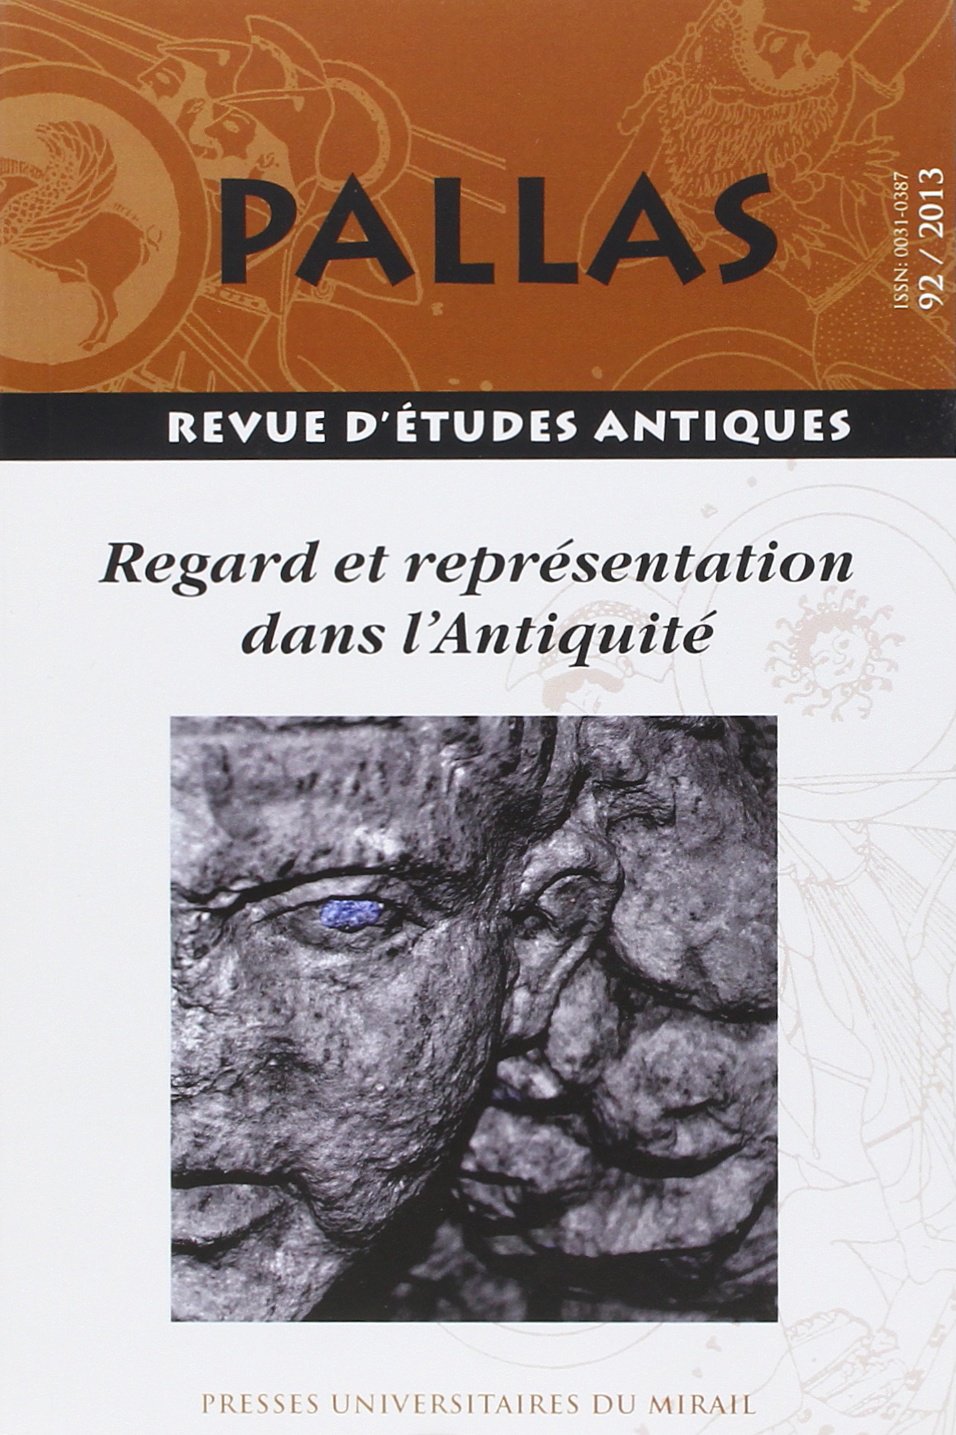 92. Regard et représentation dans l'Antiquité, 2013, coor. R. Courtray, 329 p.